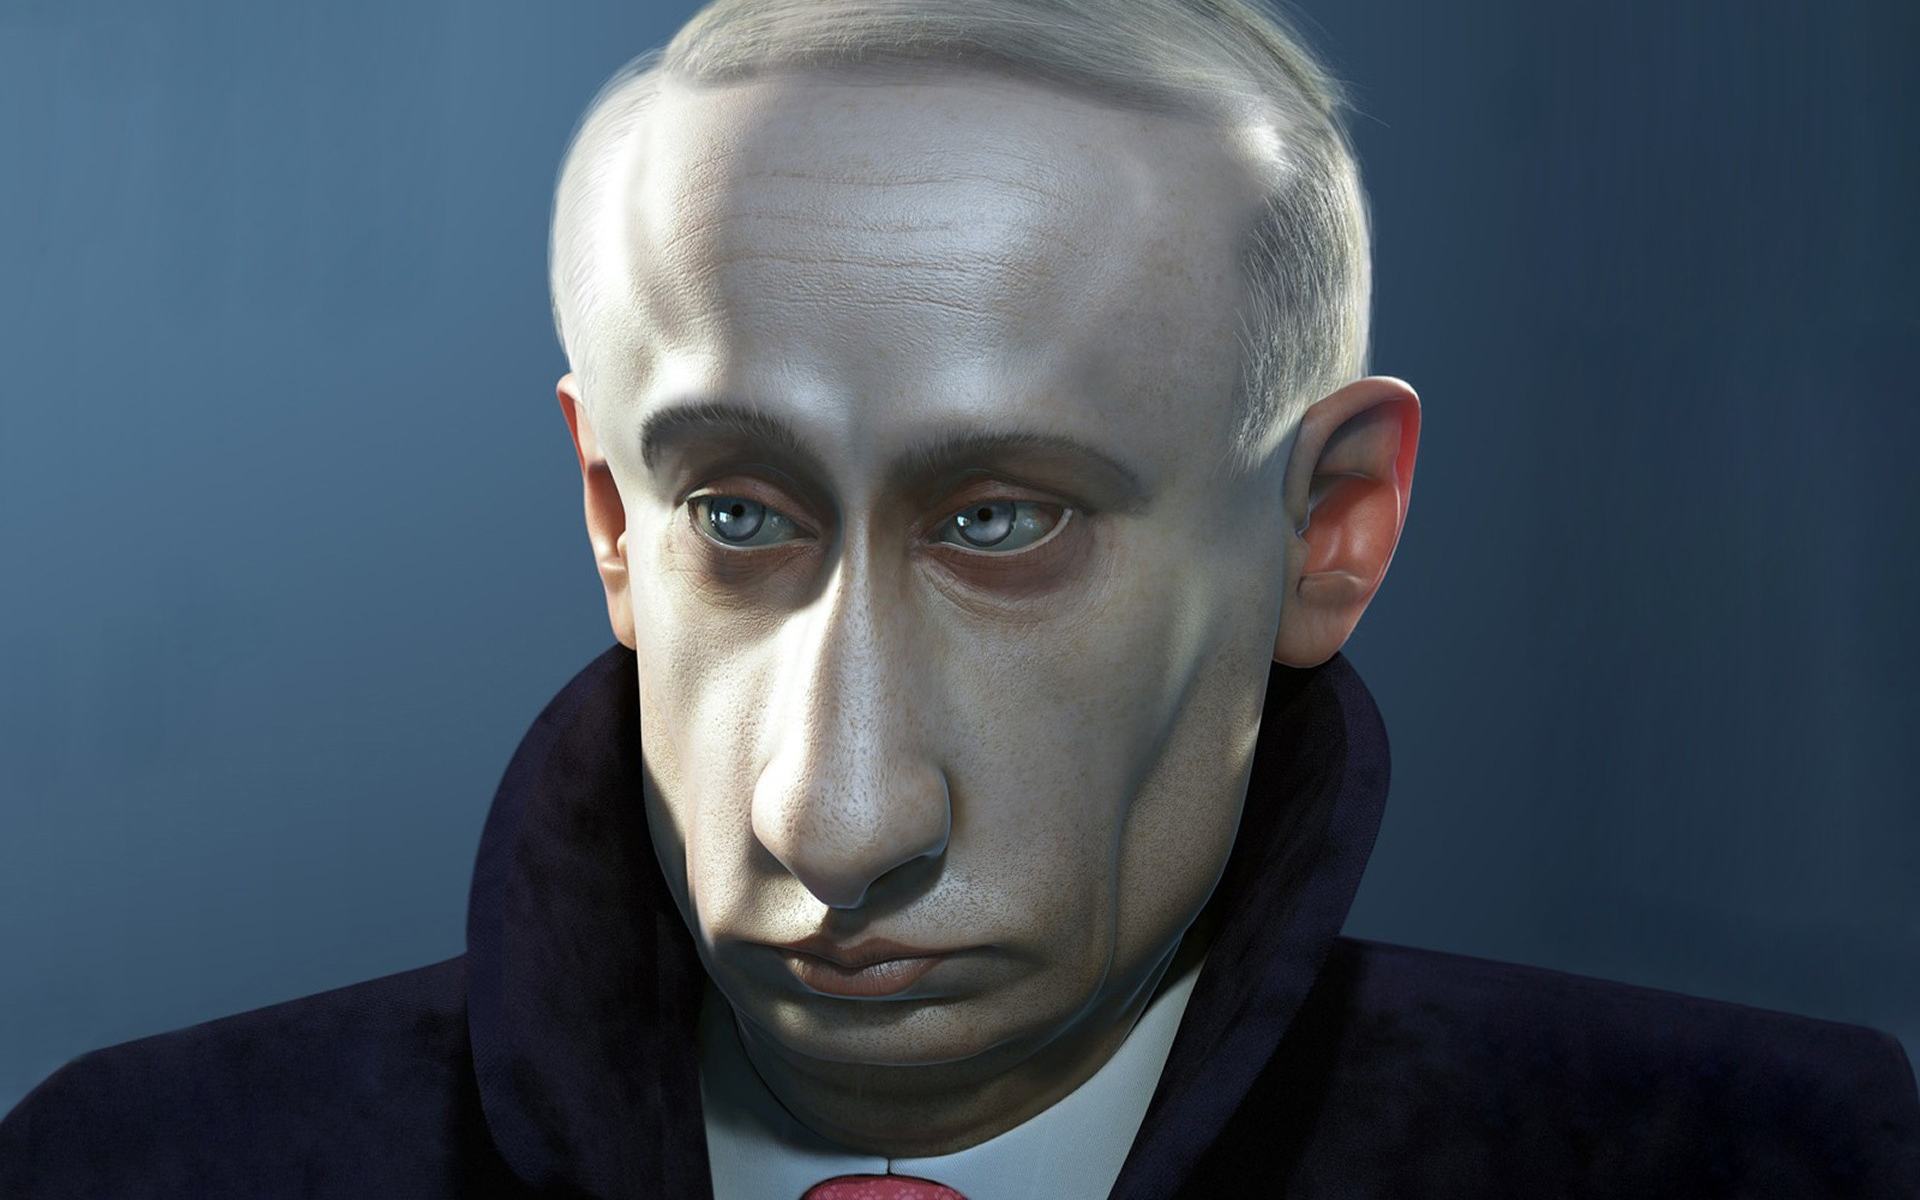 Фото Путина В Высоком Разрешении